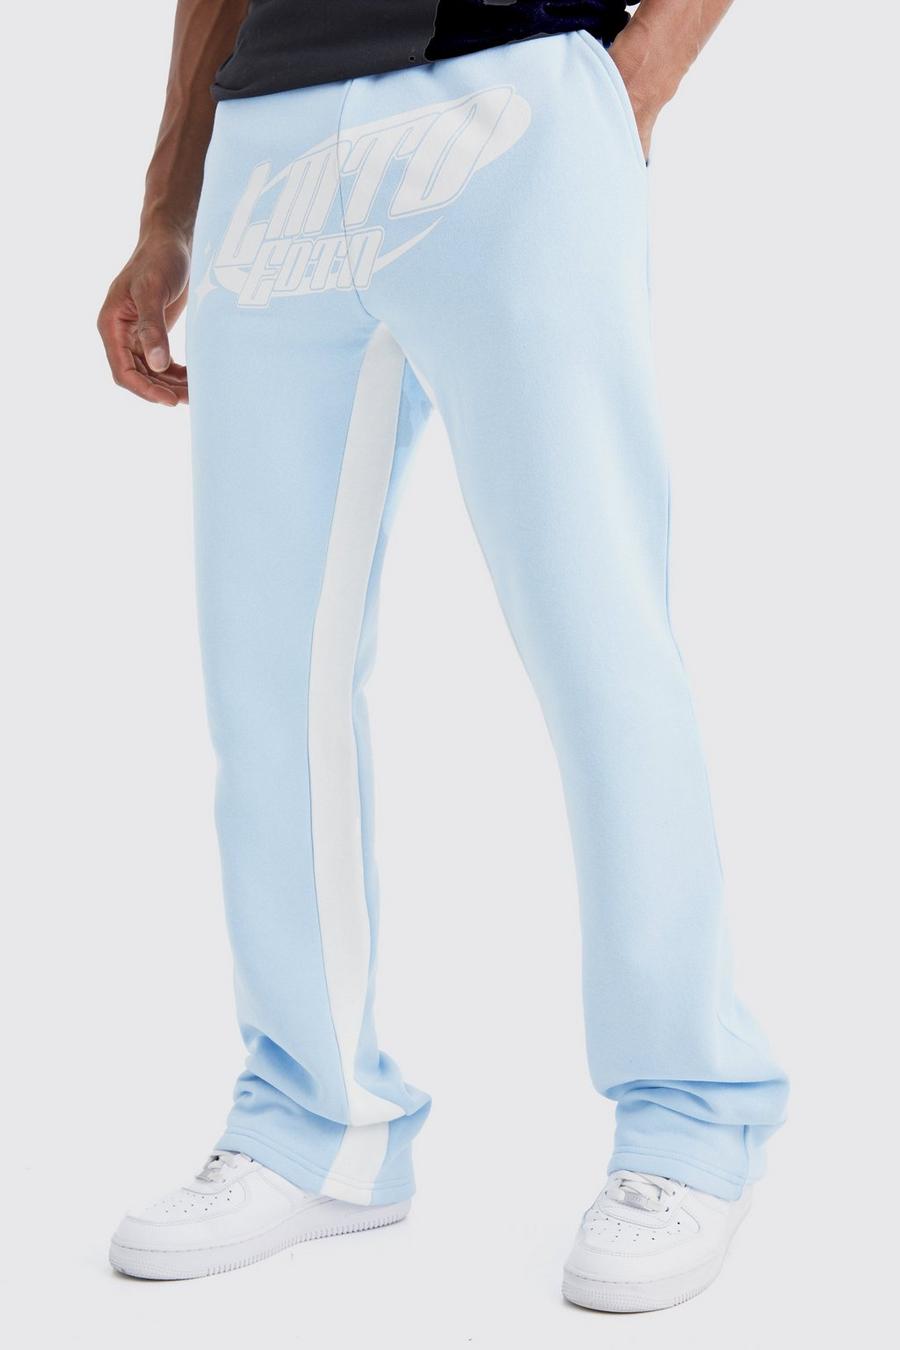 Pantalón deportivo Limited Edition con bajo plegado y refuerzos, Light blue